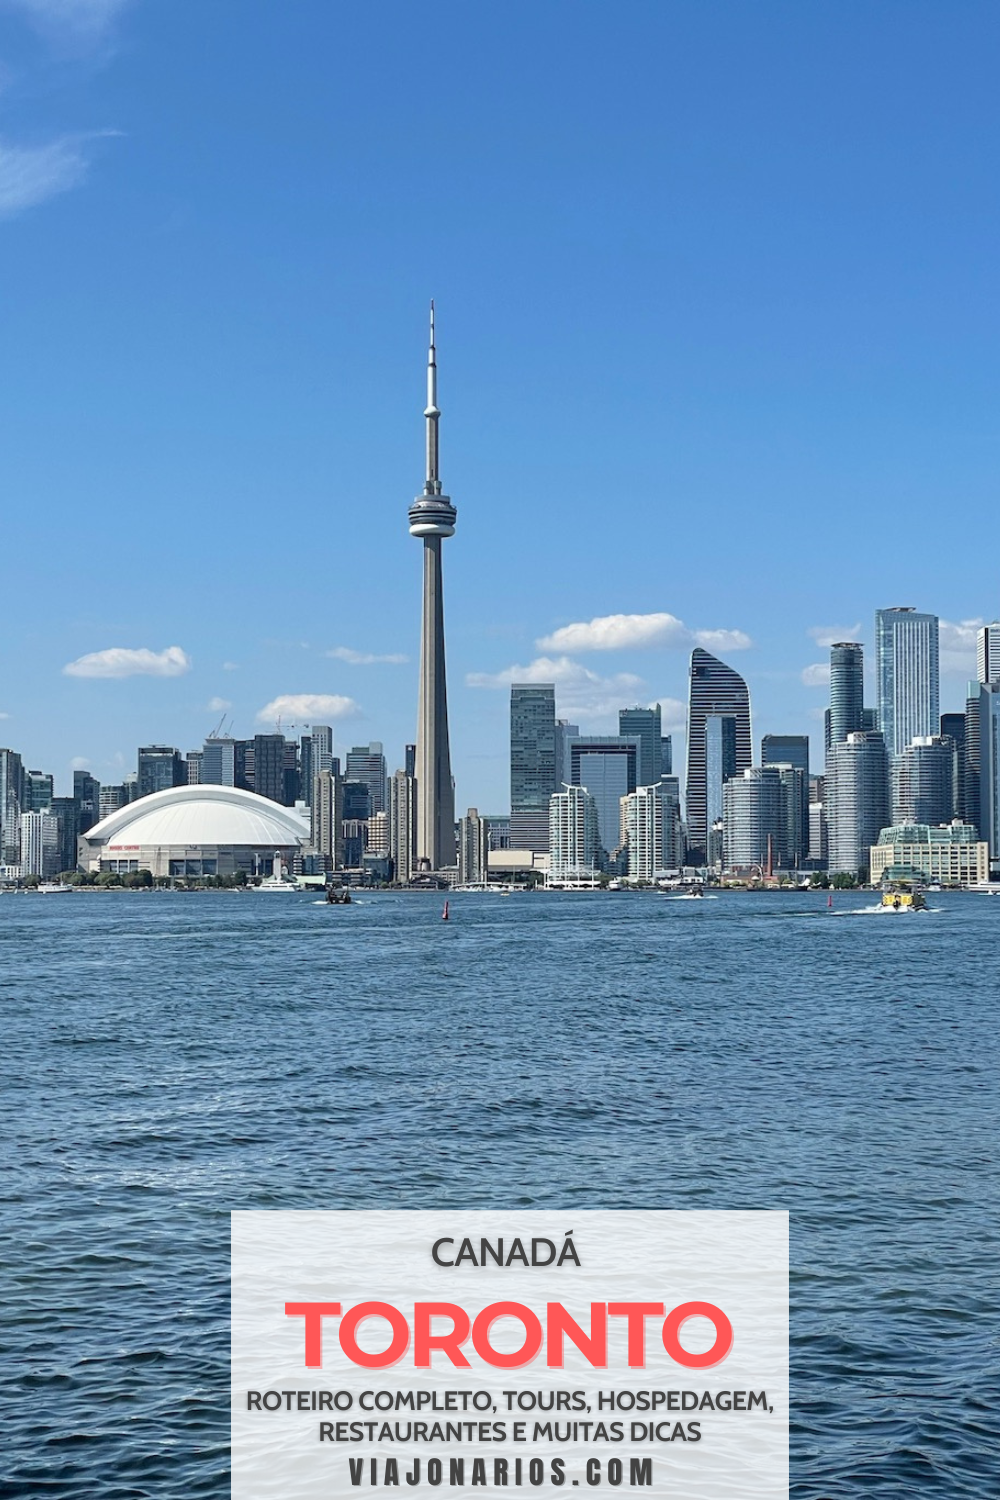 Canadá: O que fazer em Toronto - Roteiro de 2, 3, 4+ dias | https://viajonarios.com/toronto/ | #viajonarios #toronto #canada #roteiro #atracoes #dicas #oquefazer